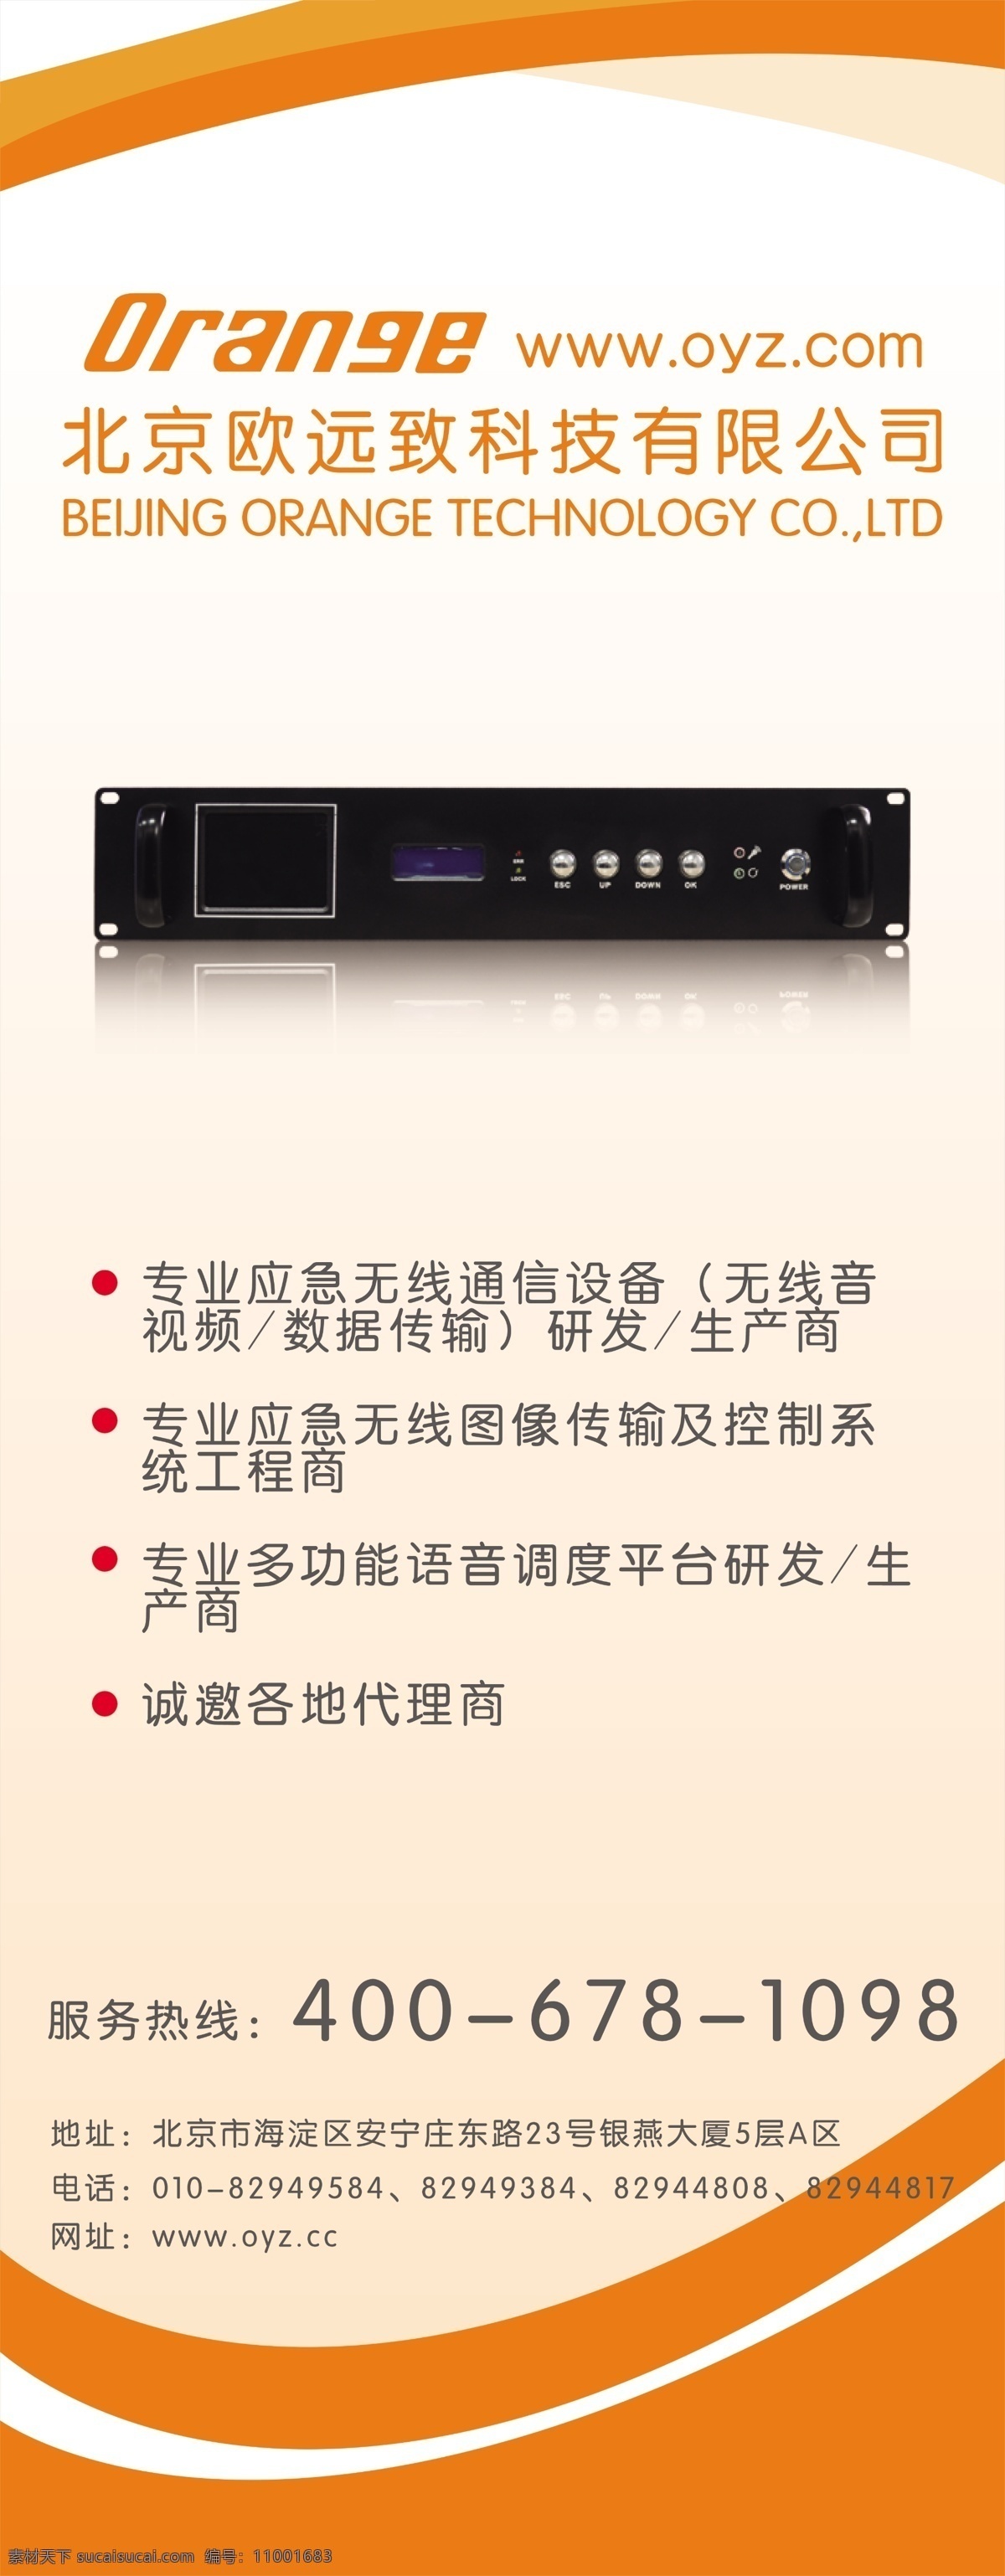 无线传输器 无线 数码 易拉宝 橙色背景 模板 易拉宝模板 分层 源文件